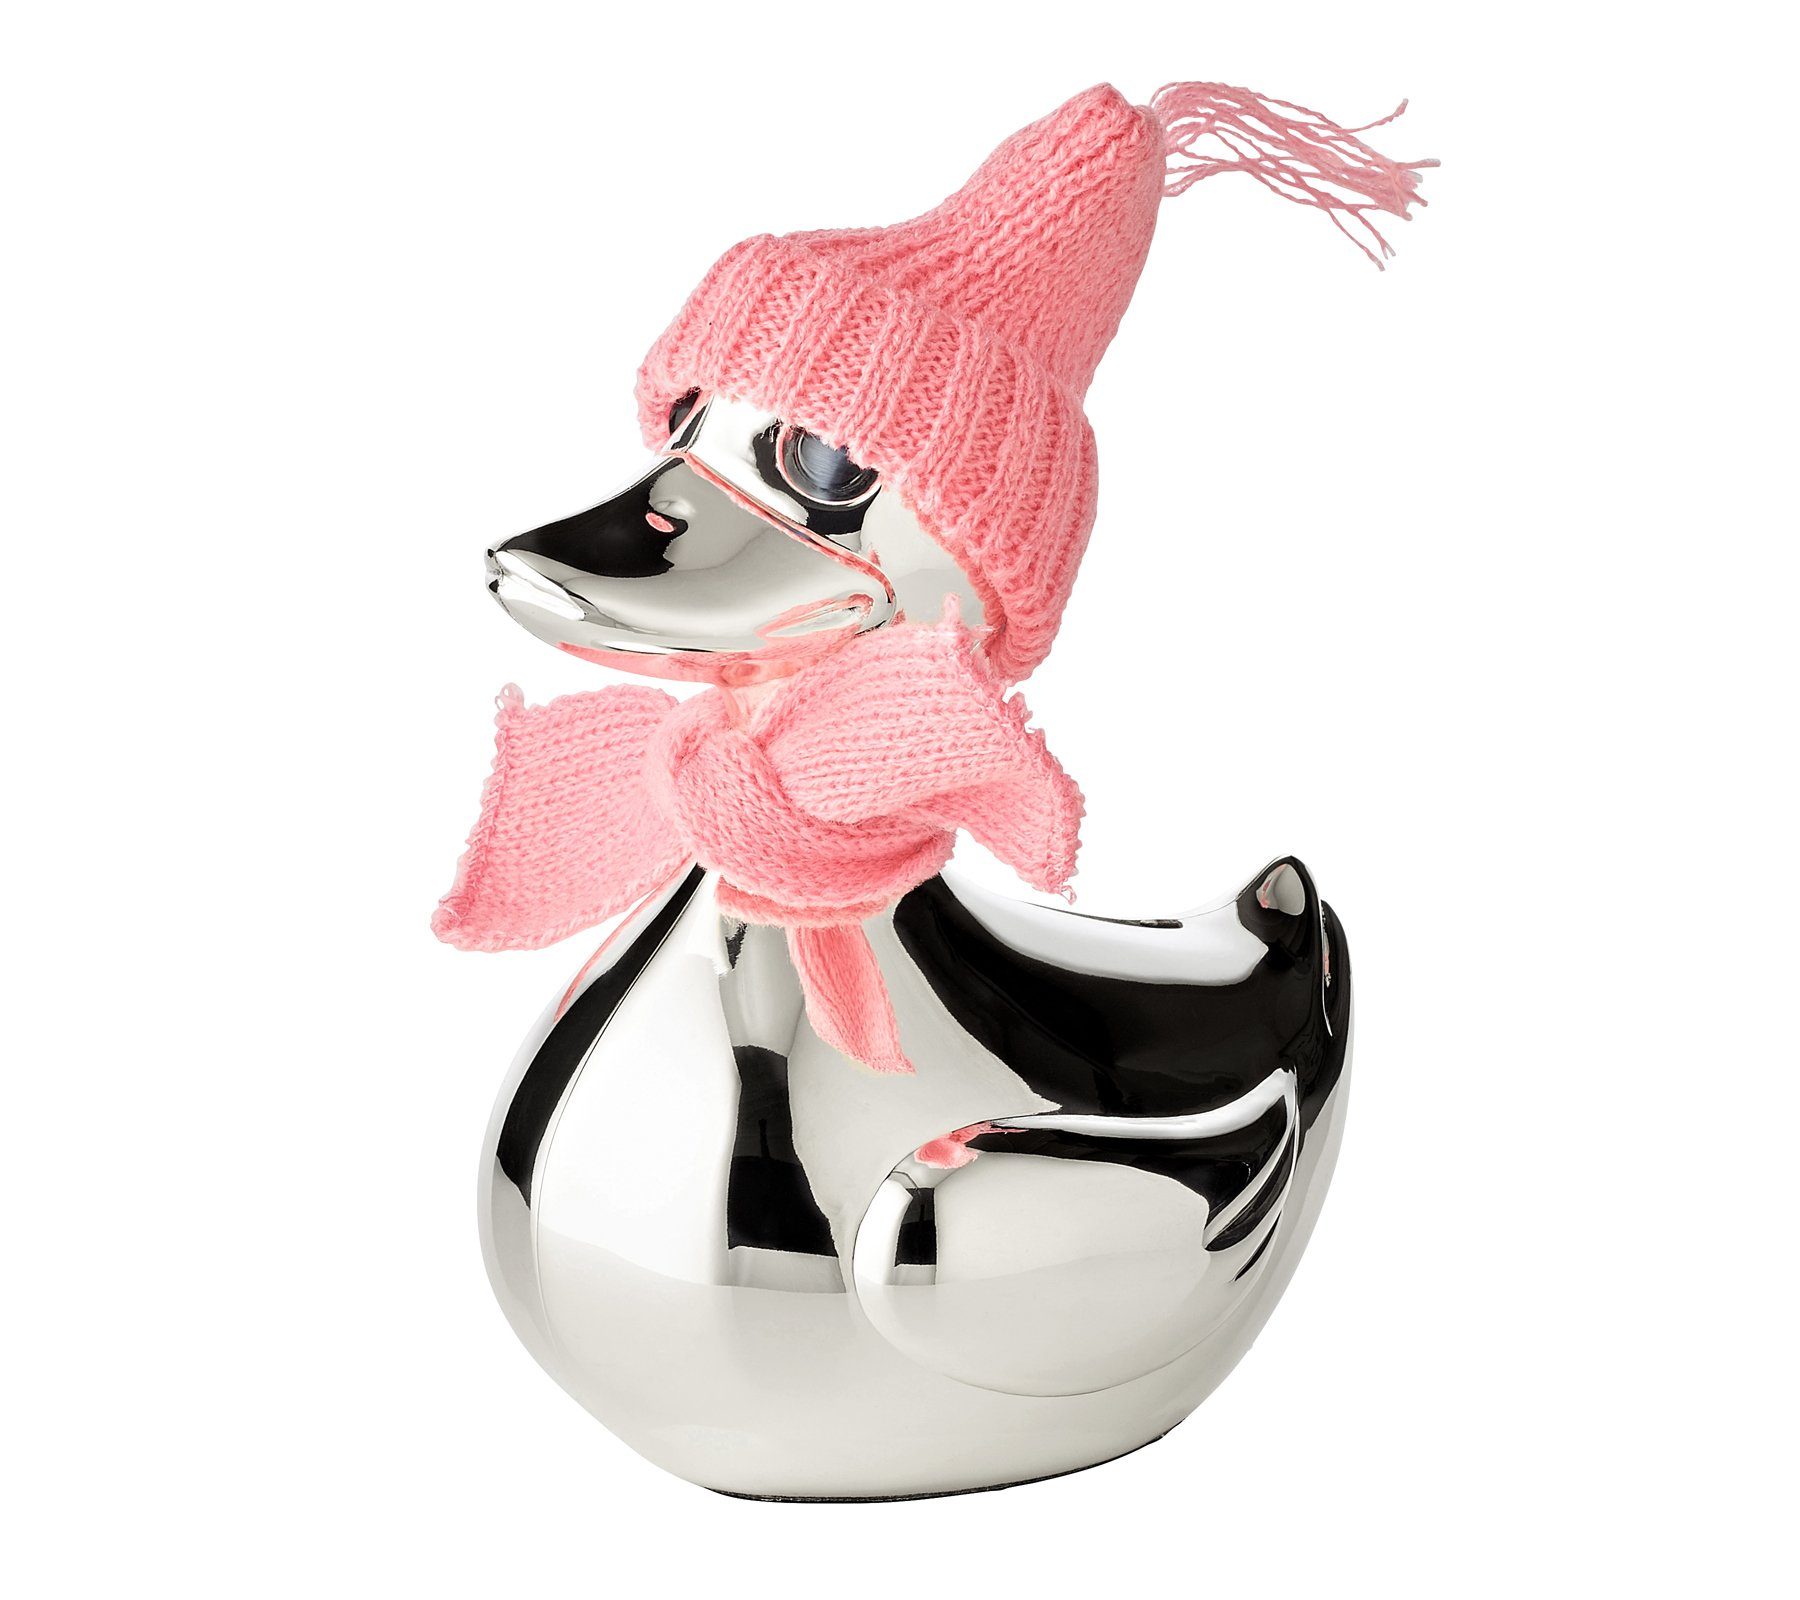 EDZARD Spardose Ente, versilberte Sparbüchse mit Anlaufschutz, Sparschwein im modernen Design, ideal als Geschenk, Höhe 13 cm